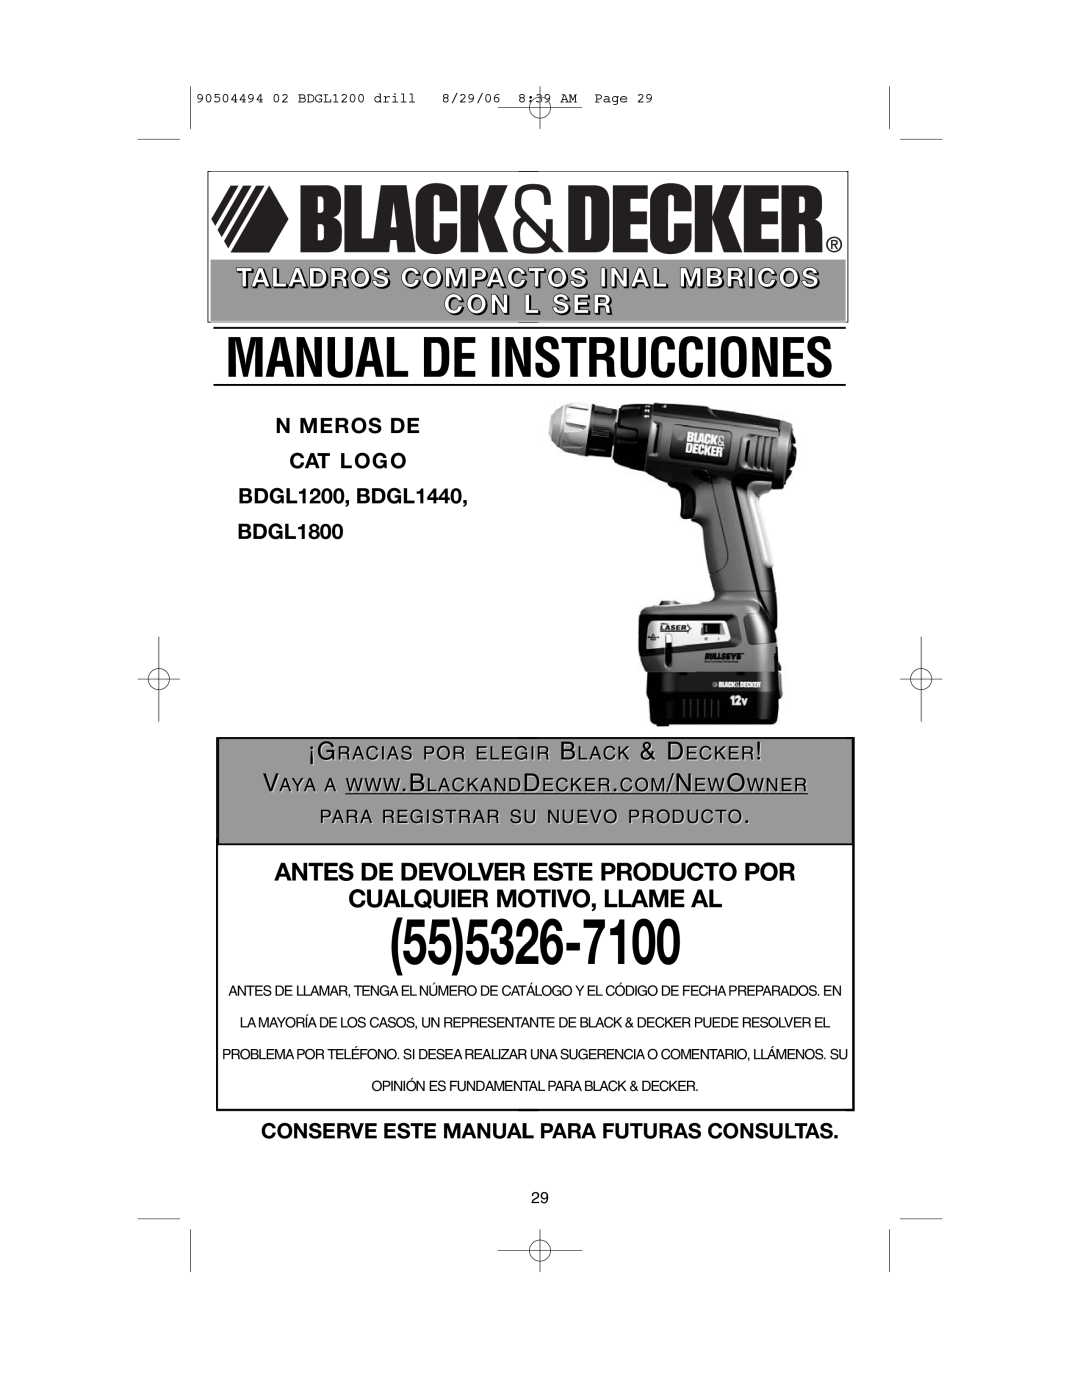 Black & Decker BDGL1440 Antes De Devolver Este Producto Por Cualquier Motivo, Llame Al, ¡Gracias Por Elegir Black & Decker 